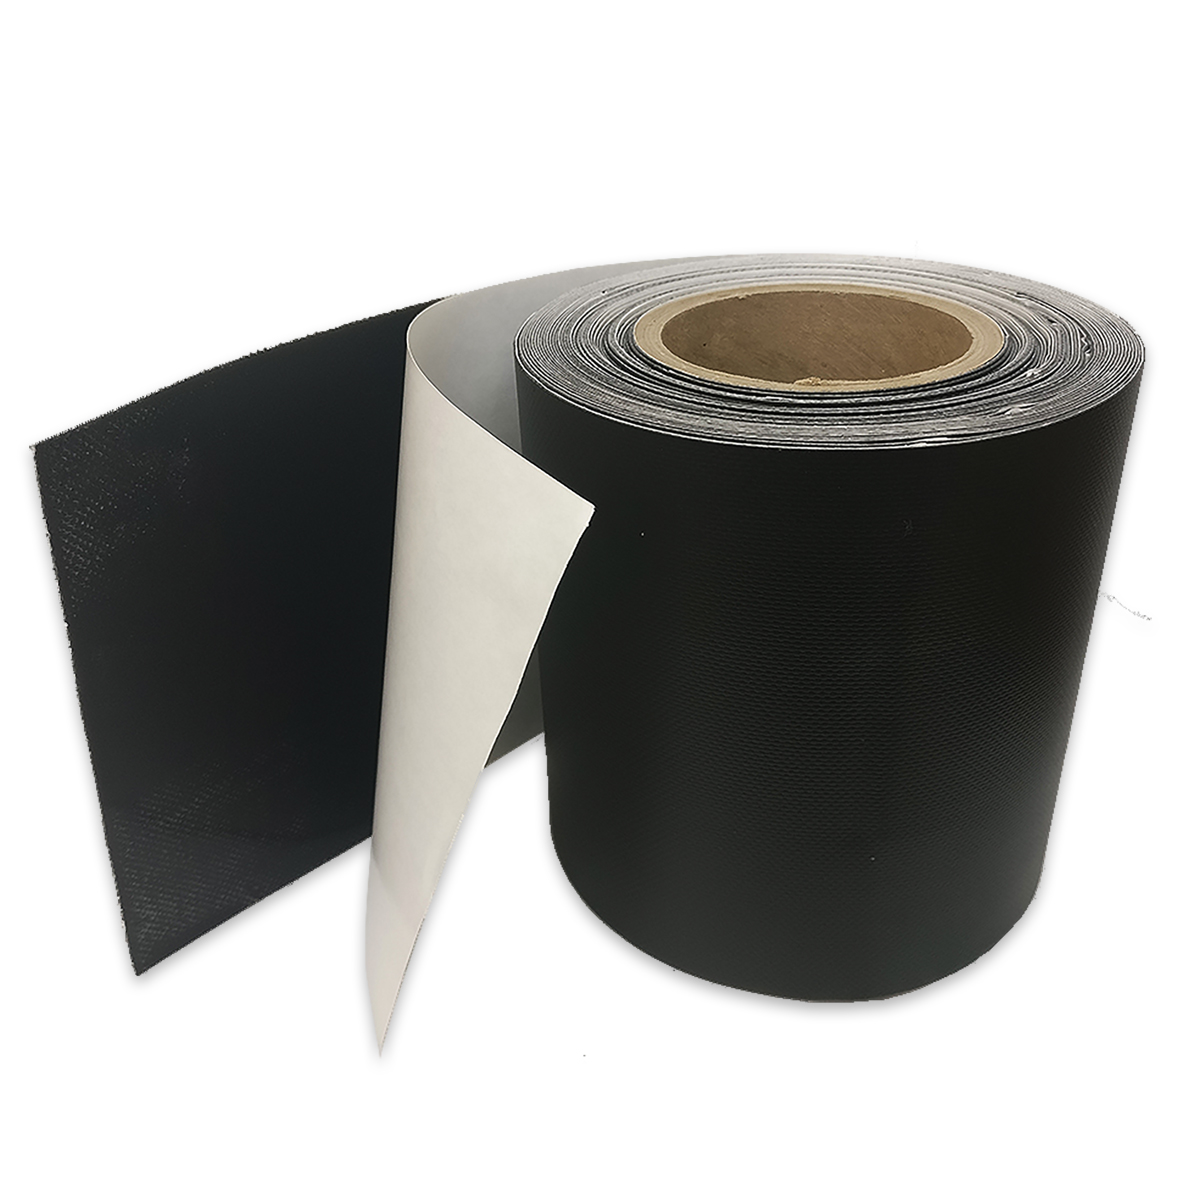 Tarp Repair Tape (6" x 50 Roll) - BESTSELLING Vinyl Tarp Tape, Black